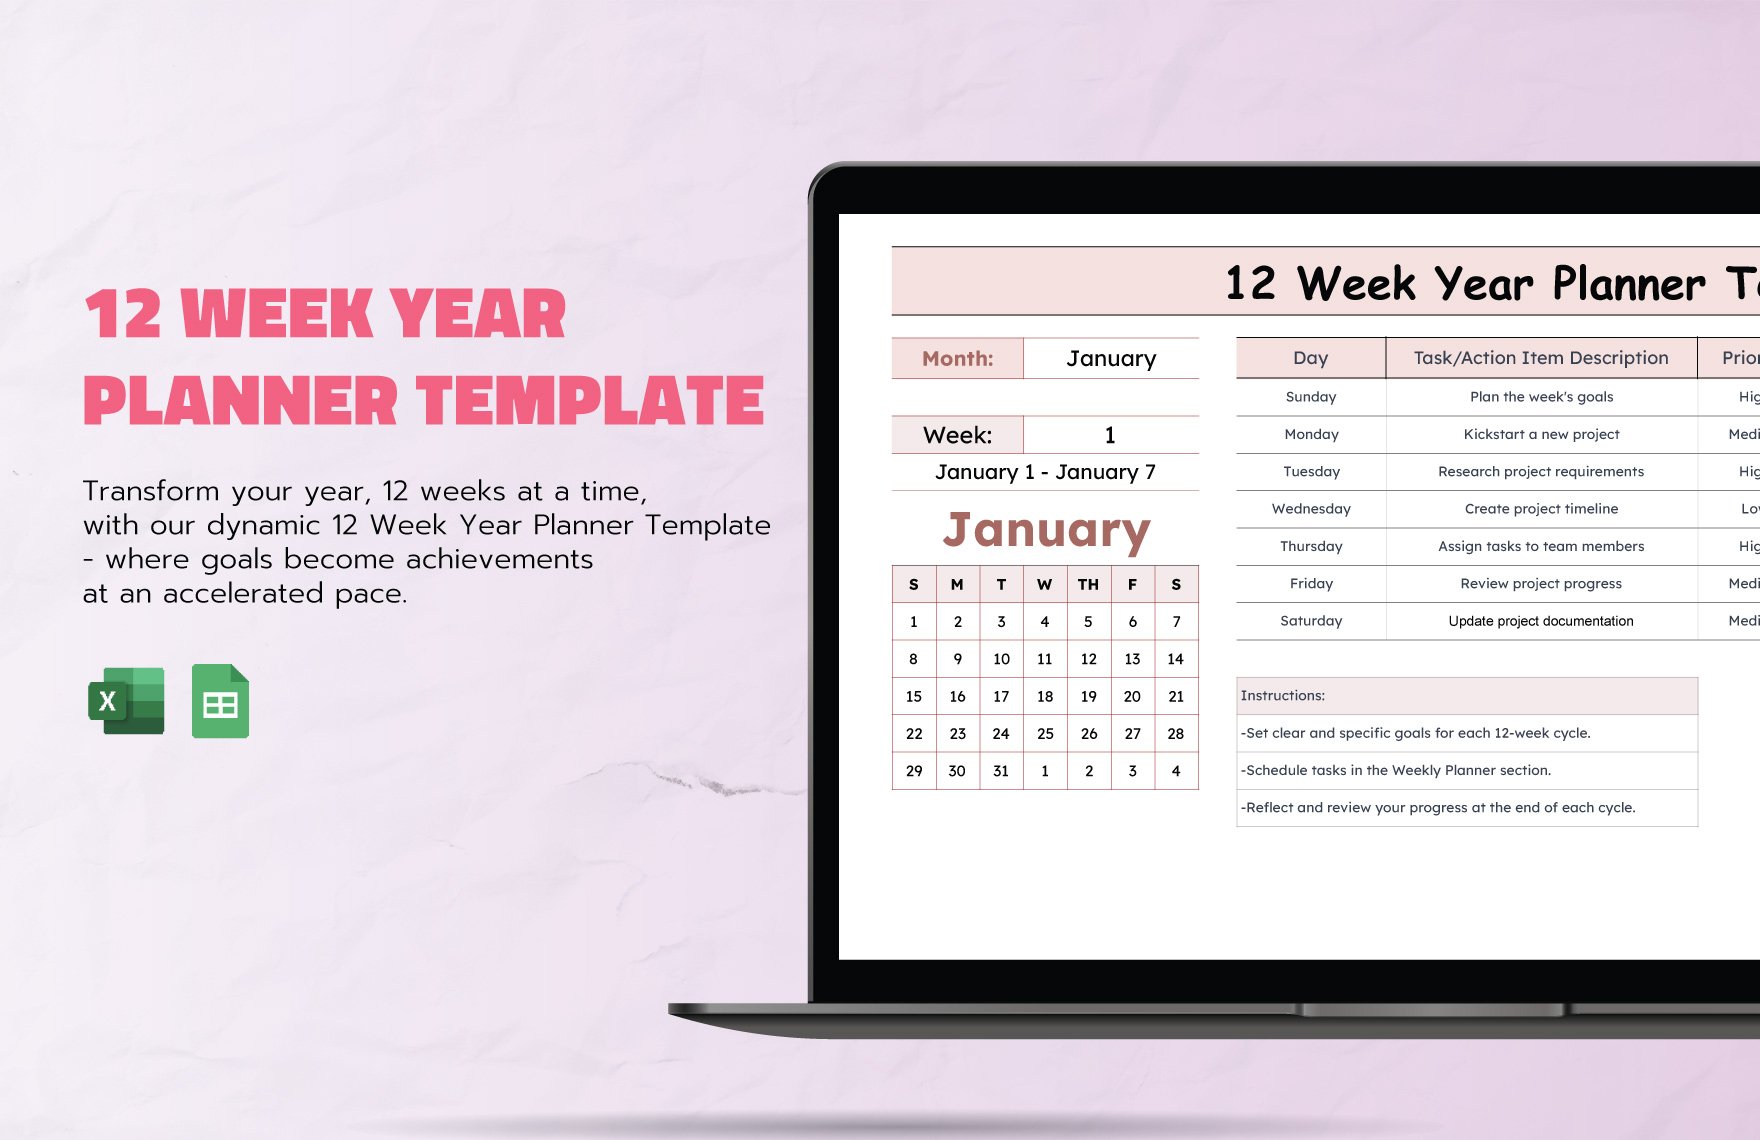 12 Week Year Planner Template